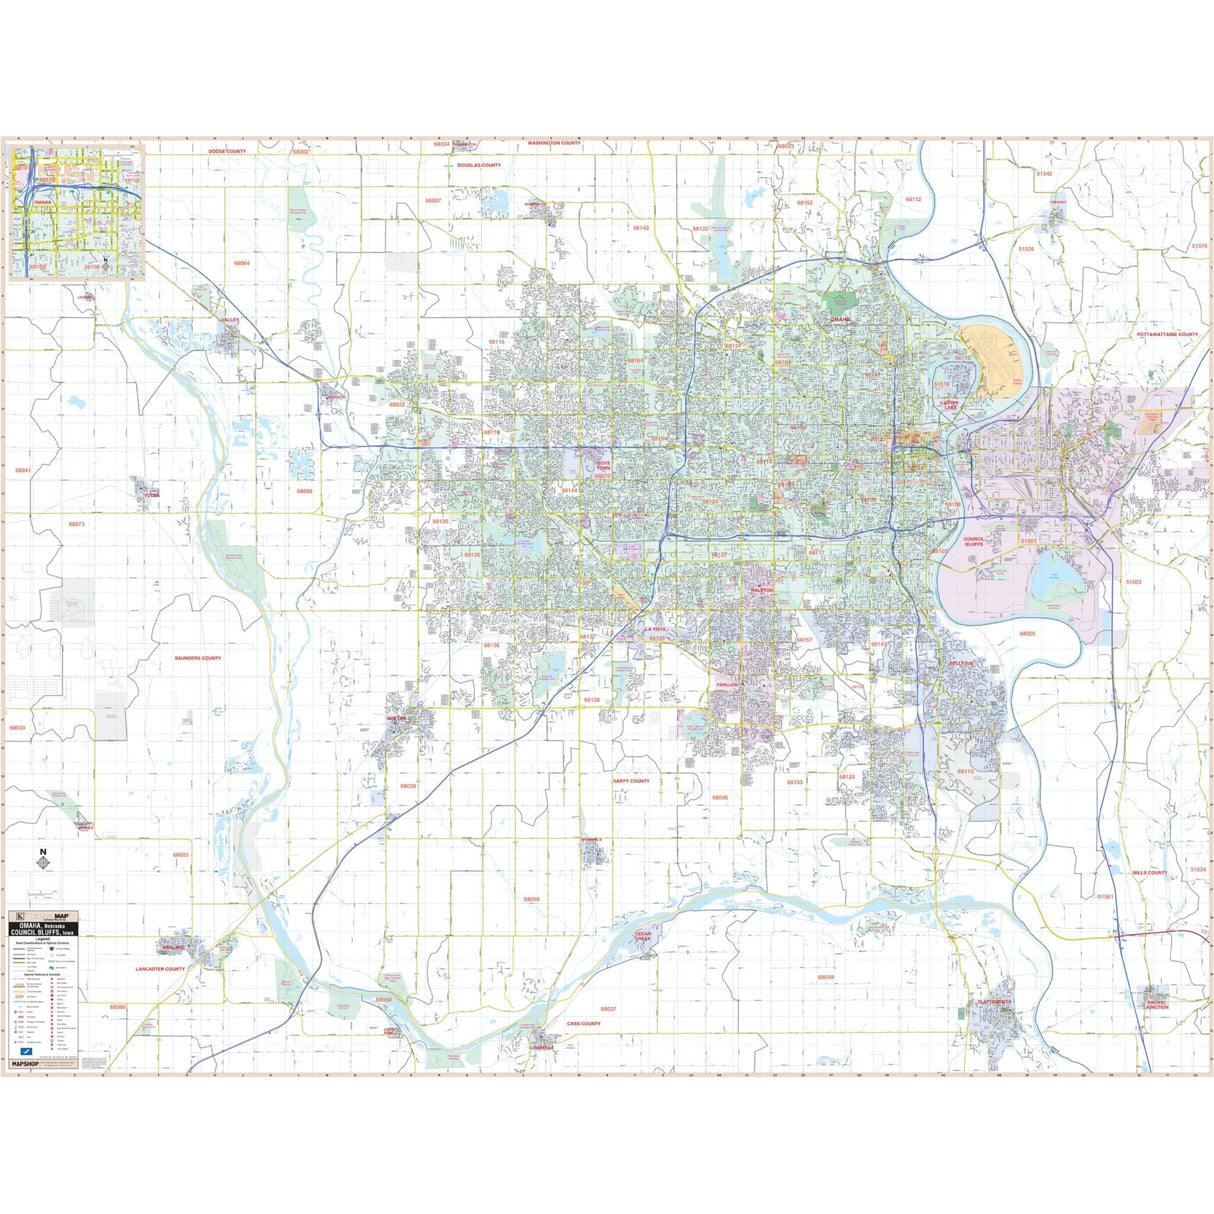 Omaha, NE & Council Bluffs, IA Wall Map - KA-C-NE-OMAHA-PAPER - Ultimate Globes